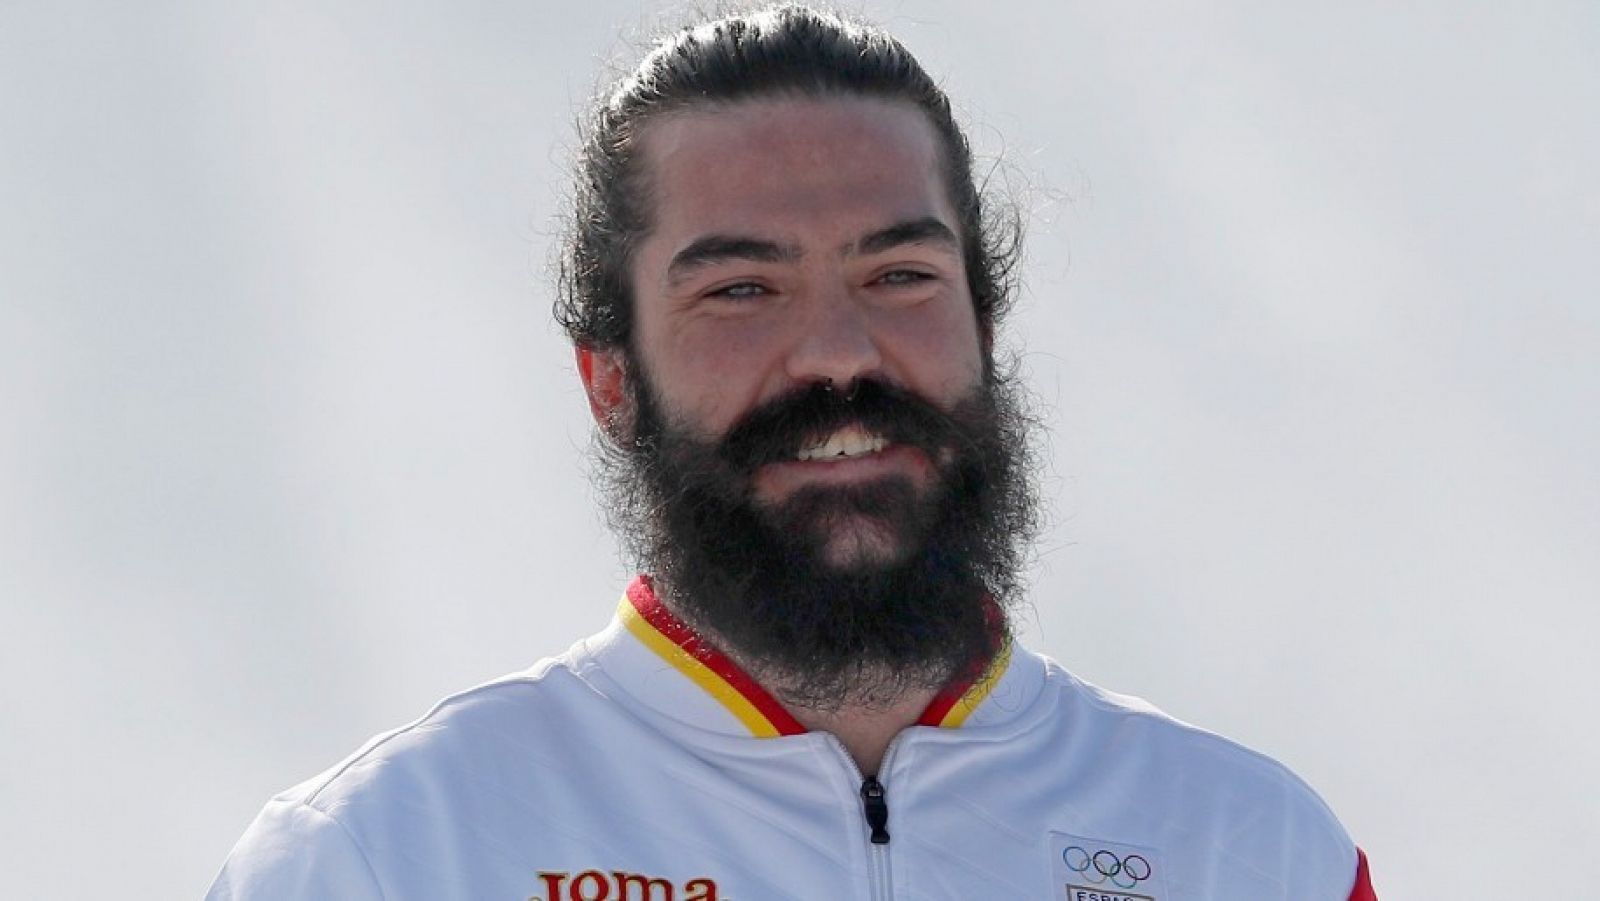 Imagen del rider español Regino Hernández tras conquistar el bronce olímpico en los JJ.OO de PyeongChang 2018.